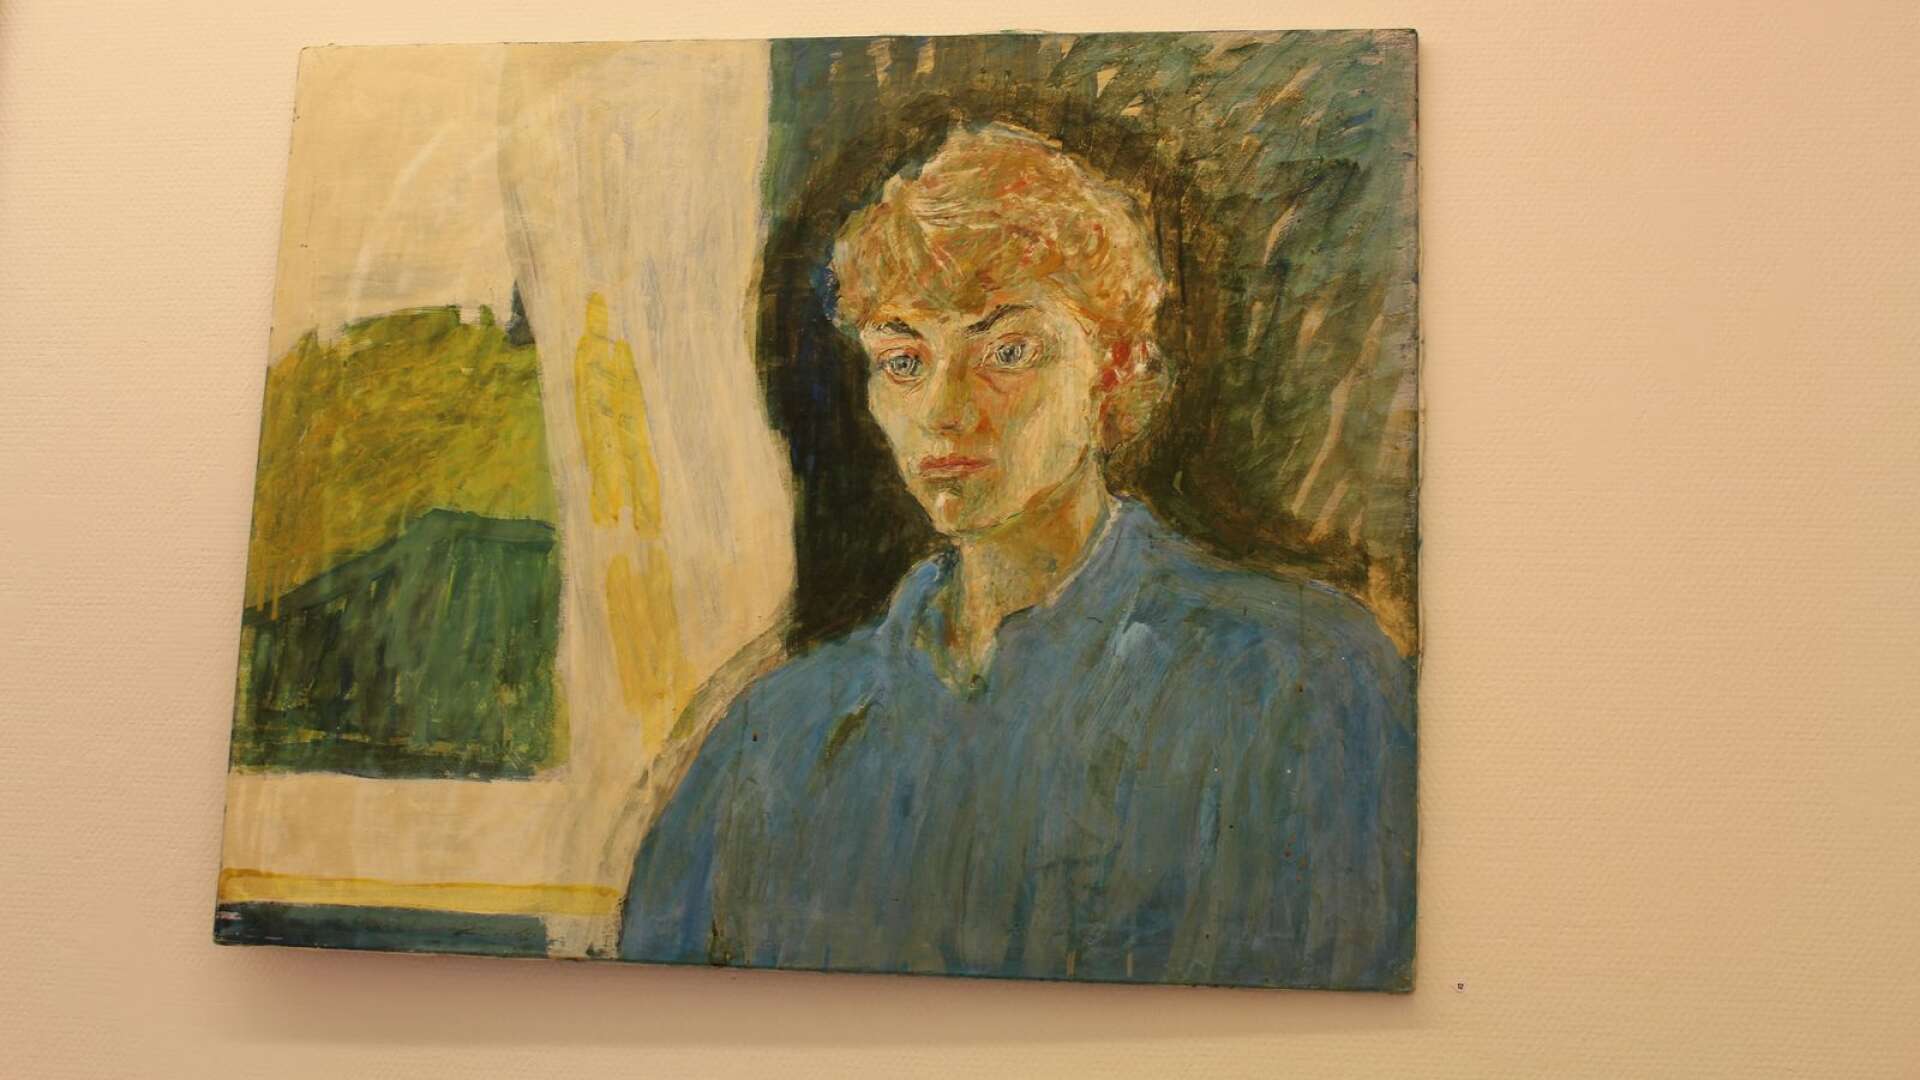 Ett porträtt av Lars Lerin från 1990 - osignerat, visas på en utställning på Arvika konsthall. Nu finns en bra teori vem som är konstnären bakom verket.